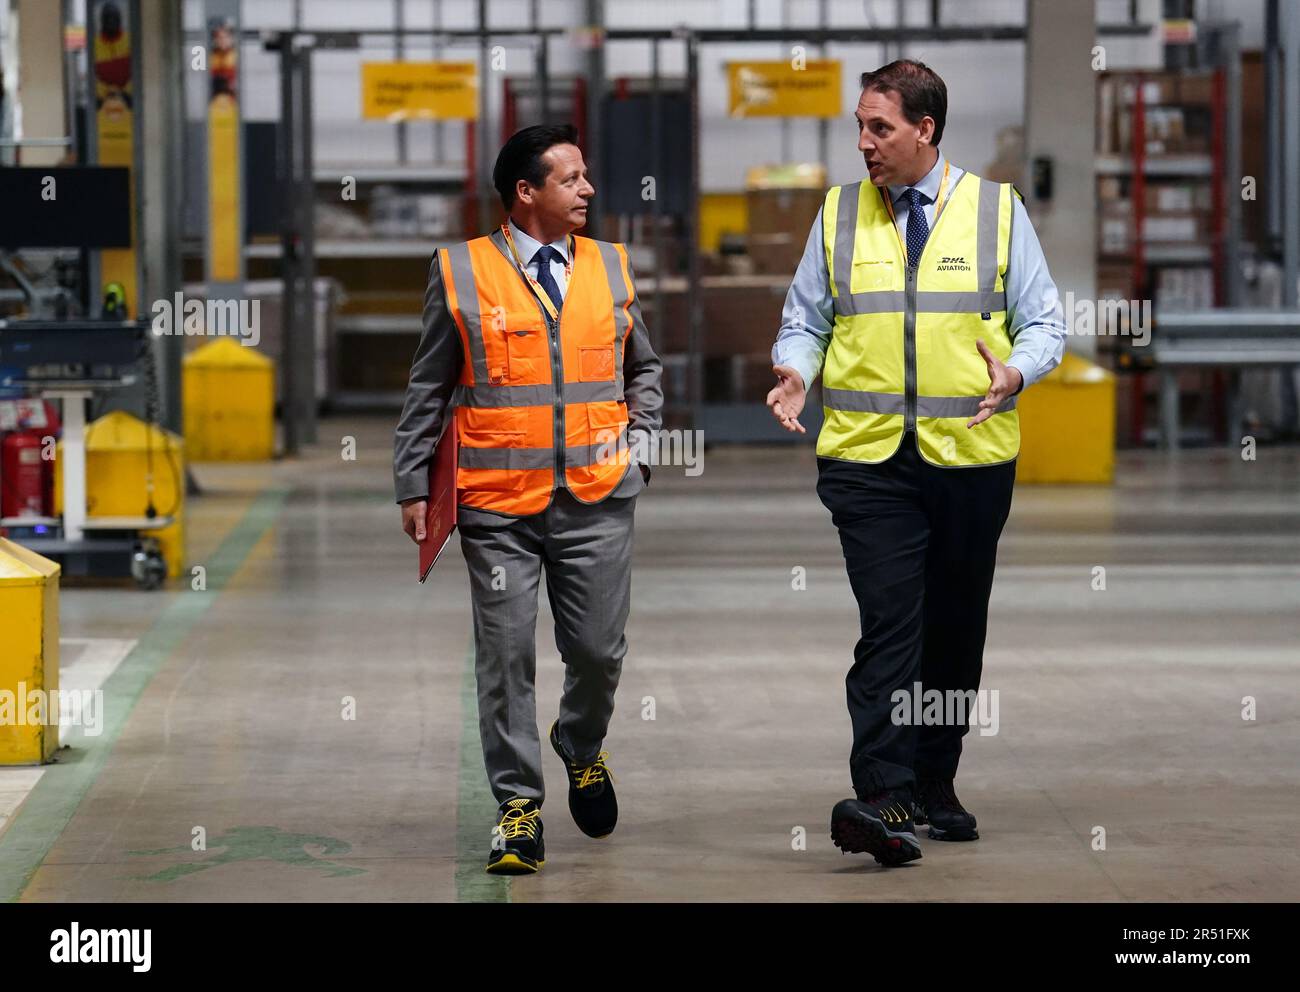 Handelsminister Nigel Huddleston während seines Besuchs im DHL-Werk von Heathrow, da die ersten Handelsgeschäfte des Vereinigten Königreichs nach dem Brexit mit Australien und Neuseeland am Mittwoch in Kraft treten. Die Abkommen sind die ersten Handelsabkommen, die nach dem Brexit ausgehandelt wurden und in Kraft treten, nachdem das Vereinigte Königreich, Australien und Neuseeland ihre innerstaatlichen Ratifizierungsprozesse abgeschlossen haben. Bilddatum: Mittwoch, 31. Mai 2023. Stockfoto